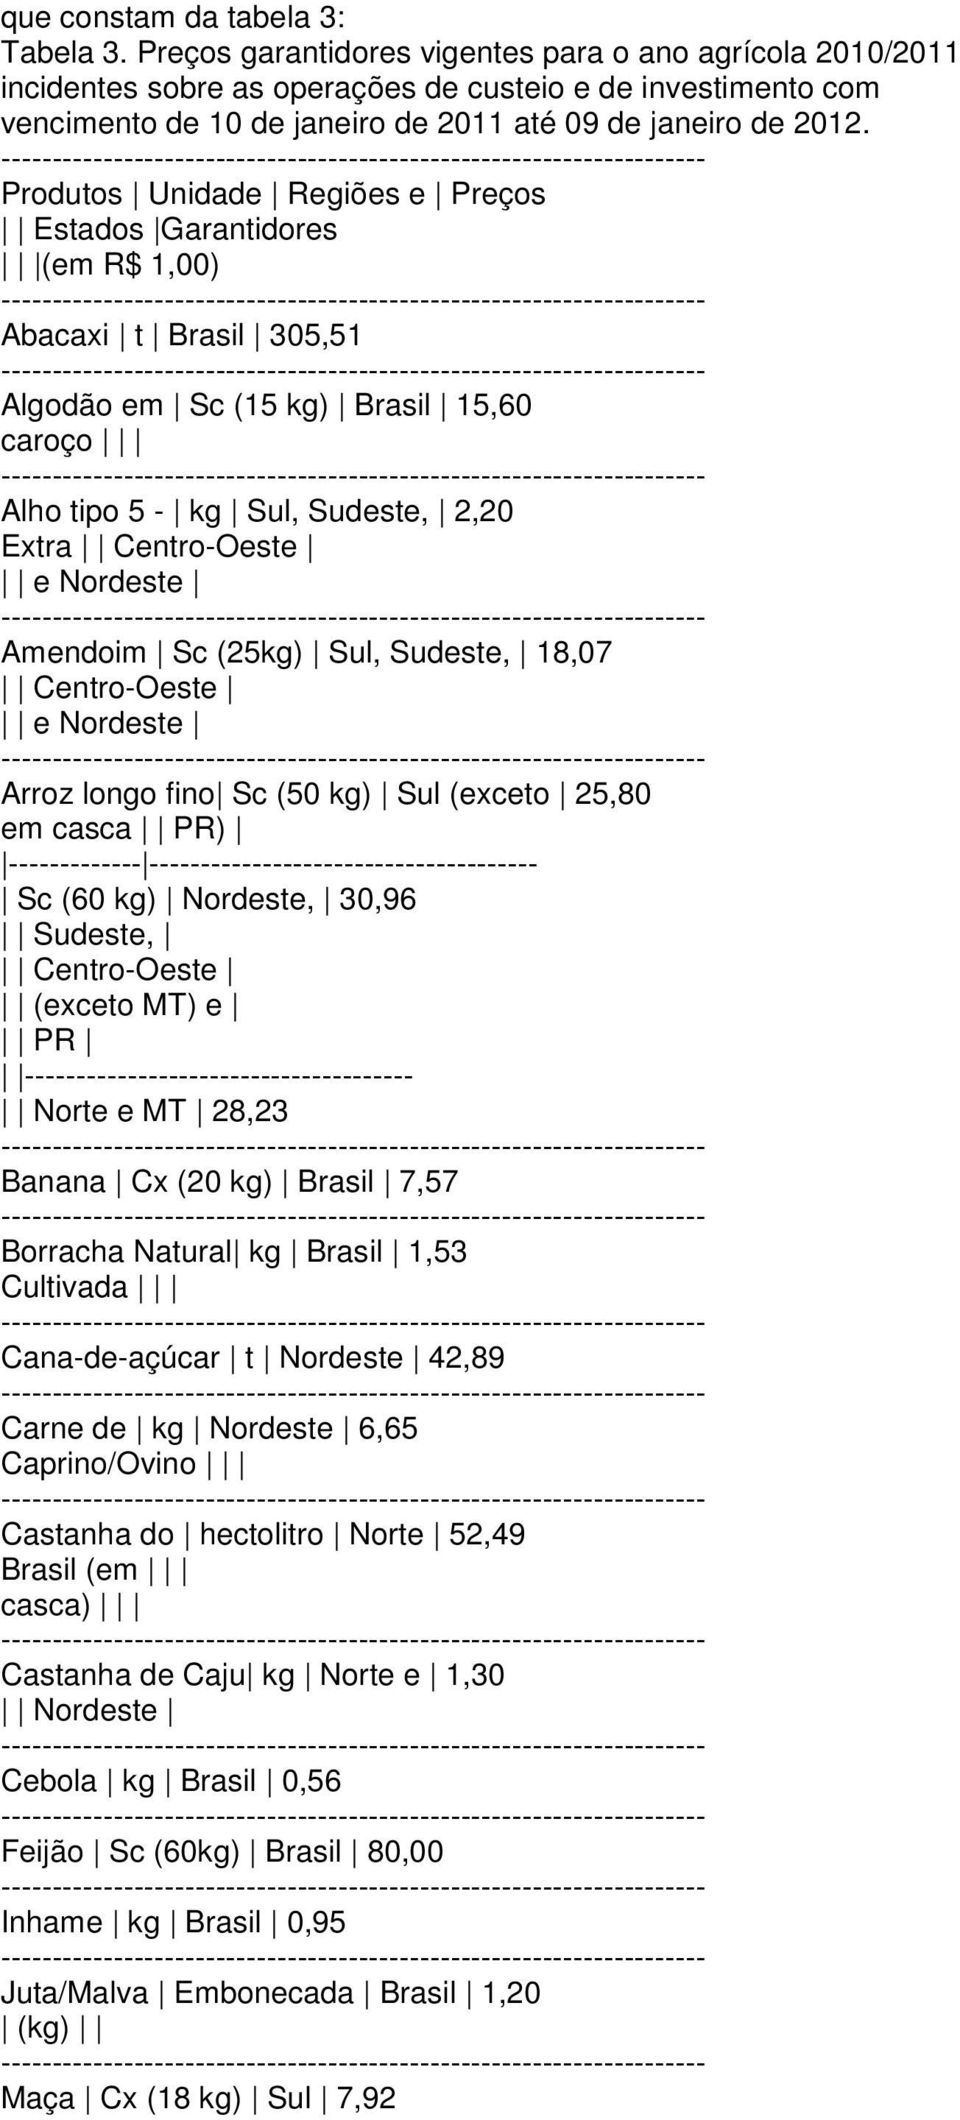 Produtos Unidade Regiões e Preços Estados Garantidores (em R$ 1,00) Abacaxi t Brasil 305,51 Algodão em Sc (15 kg) Brasil 15,60 caroço Alho tipo 5 - kg Sul, Sudeste, 2,20 Extra Centro-Oeste e Nordeste